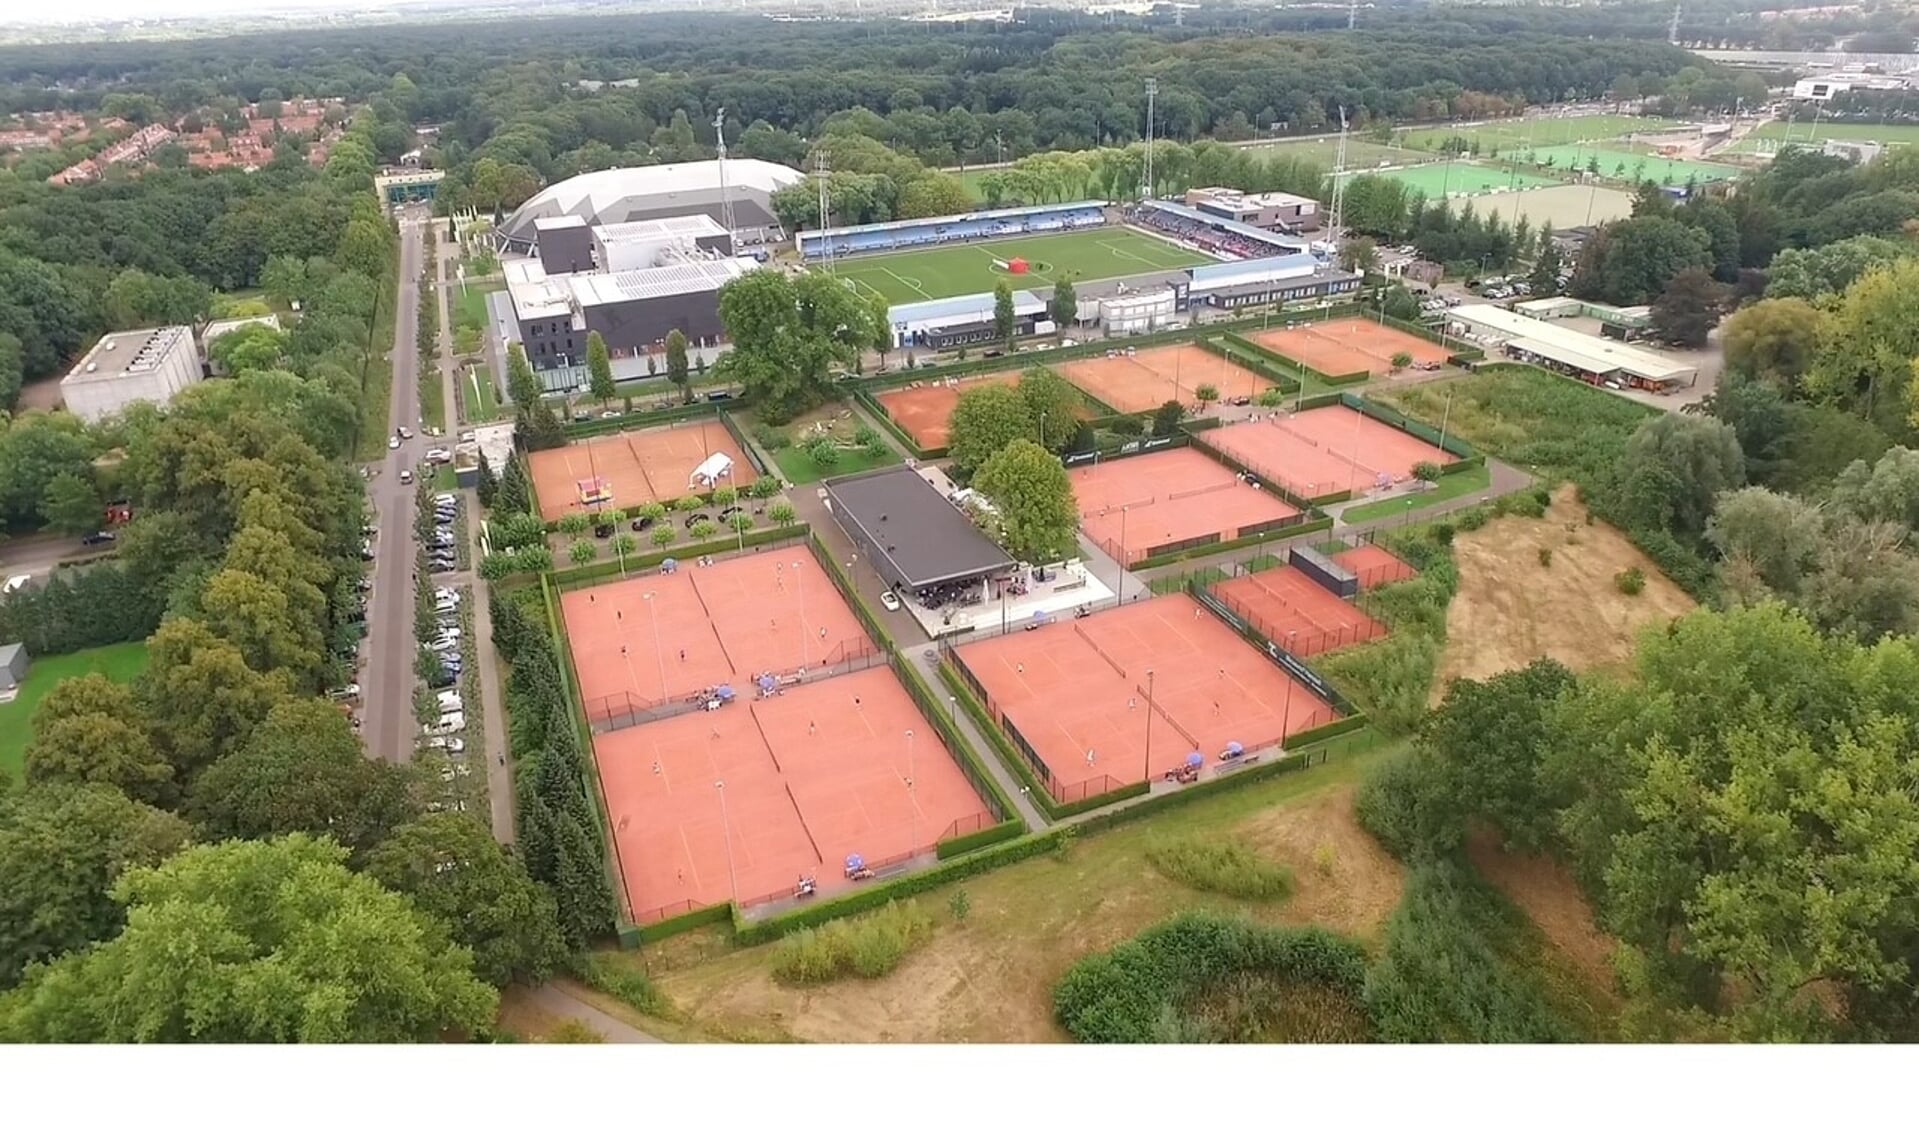 De nieuwe gravelbanen van tennisvereniging Genneper Parken.